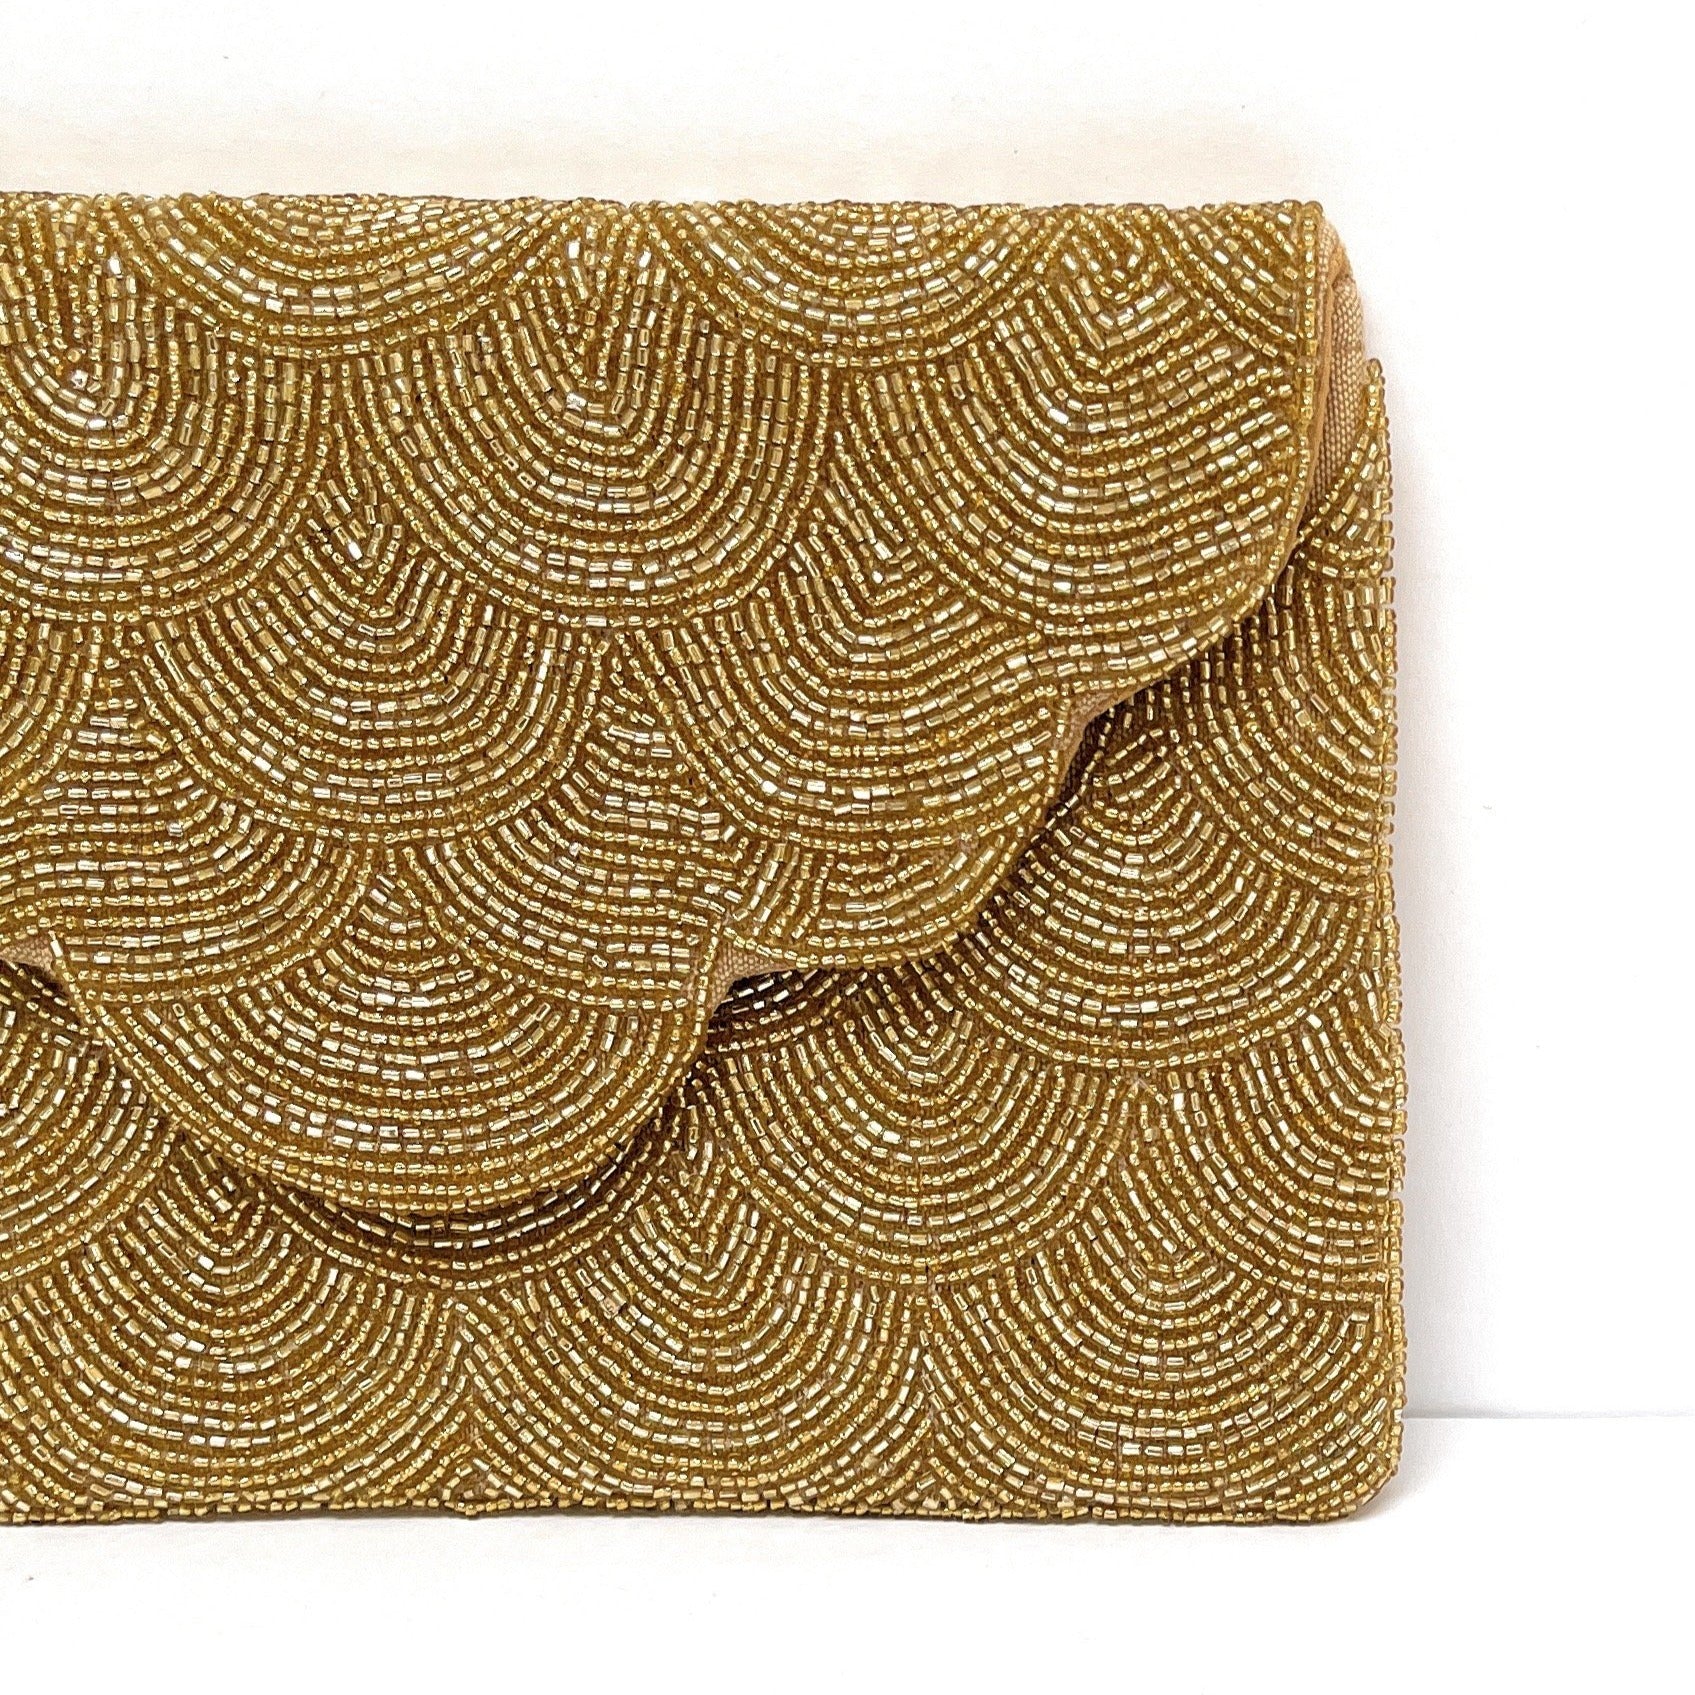 Black & Gold Textured Clutch Hand Bag – Unique Vintage